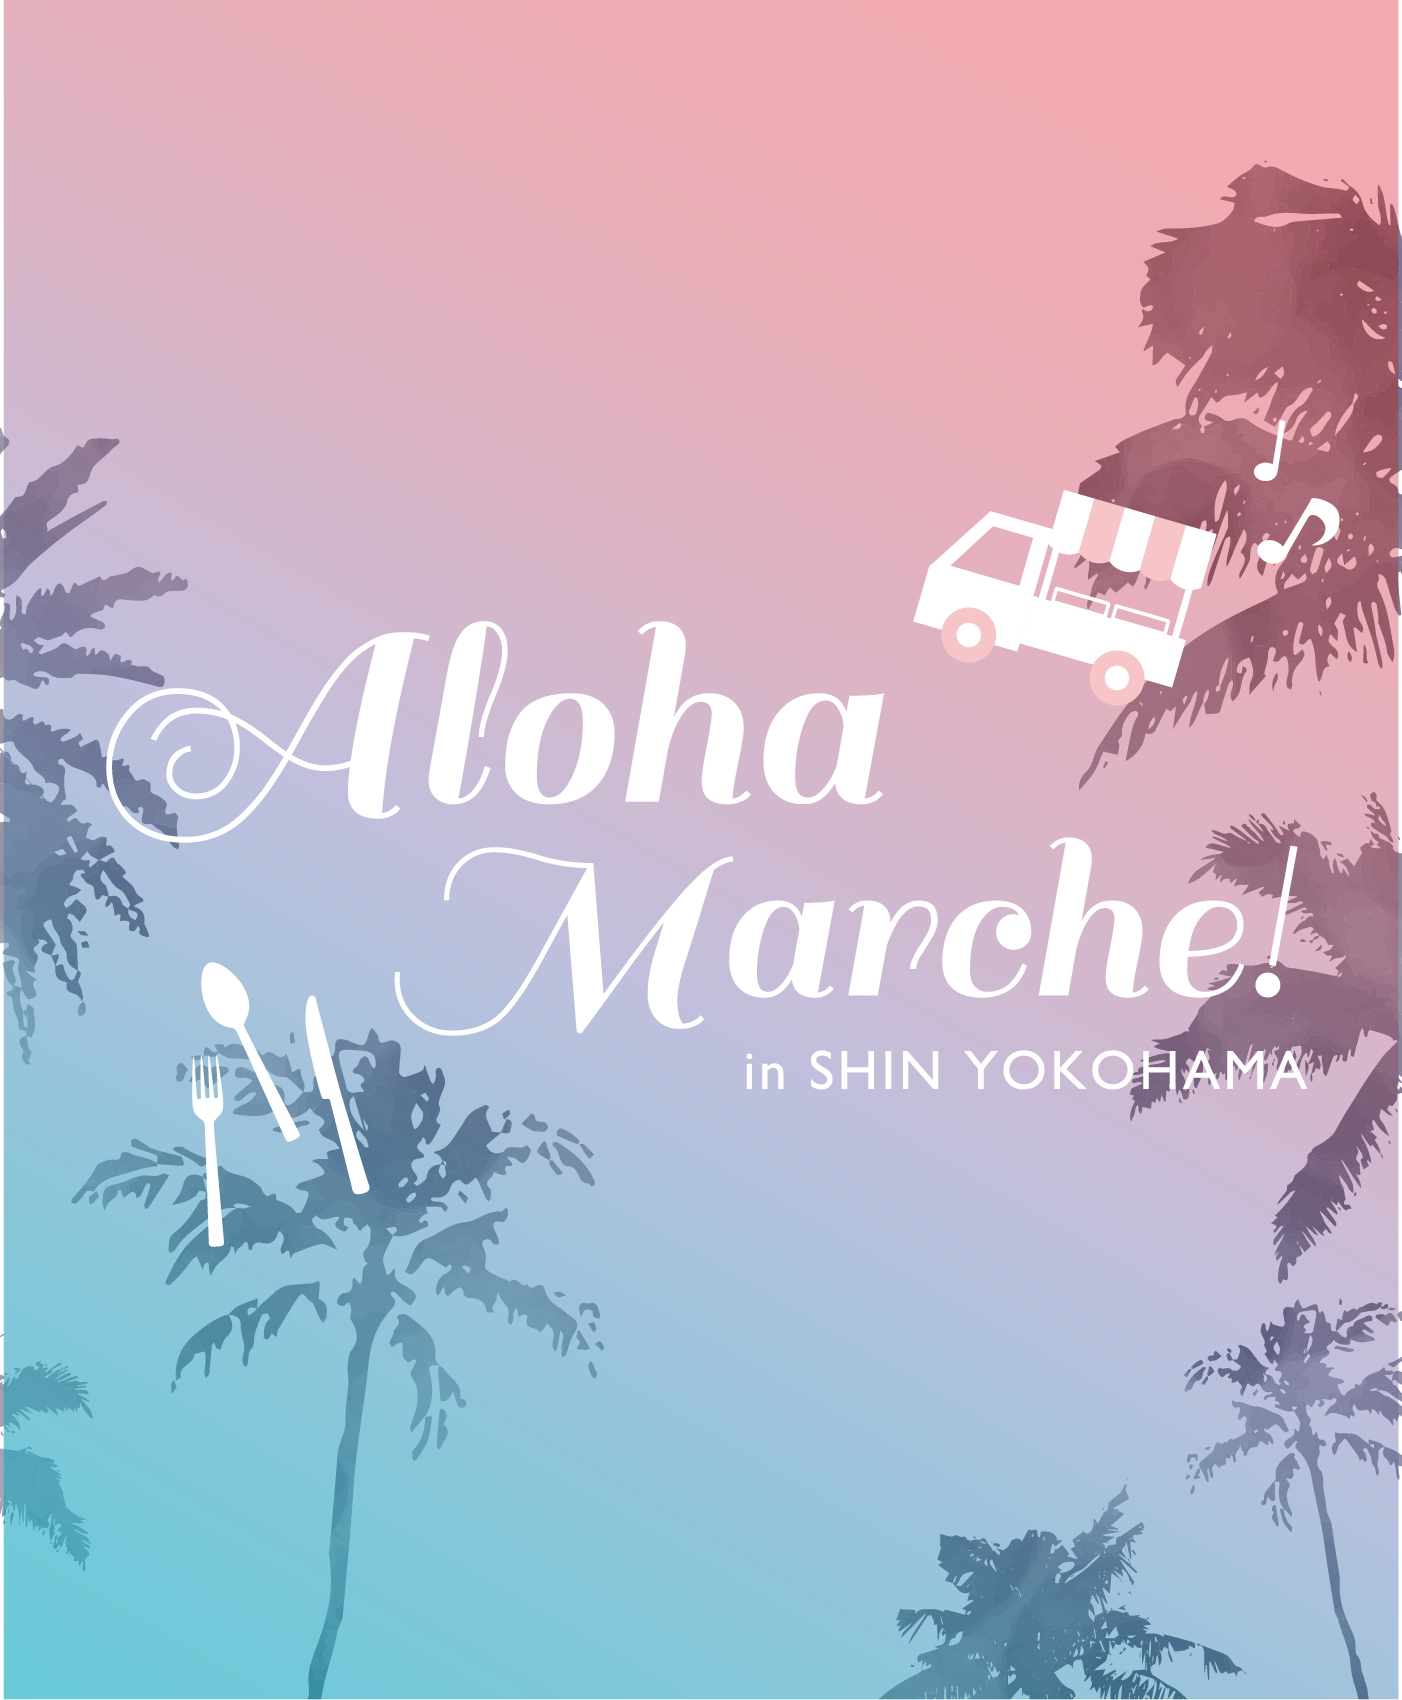 Aloha Marche! in SHIN YOKOHAMA